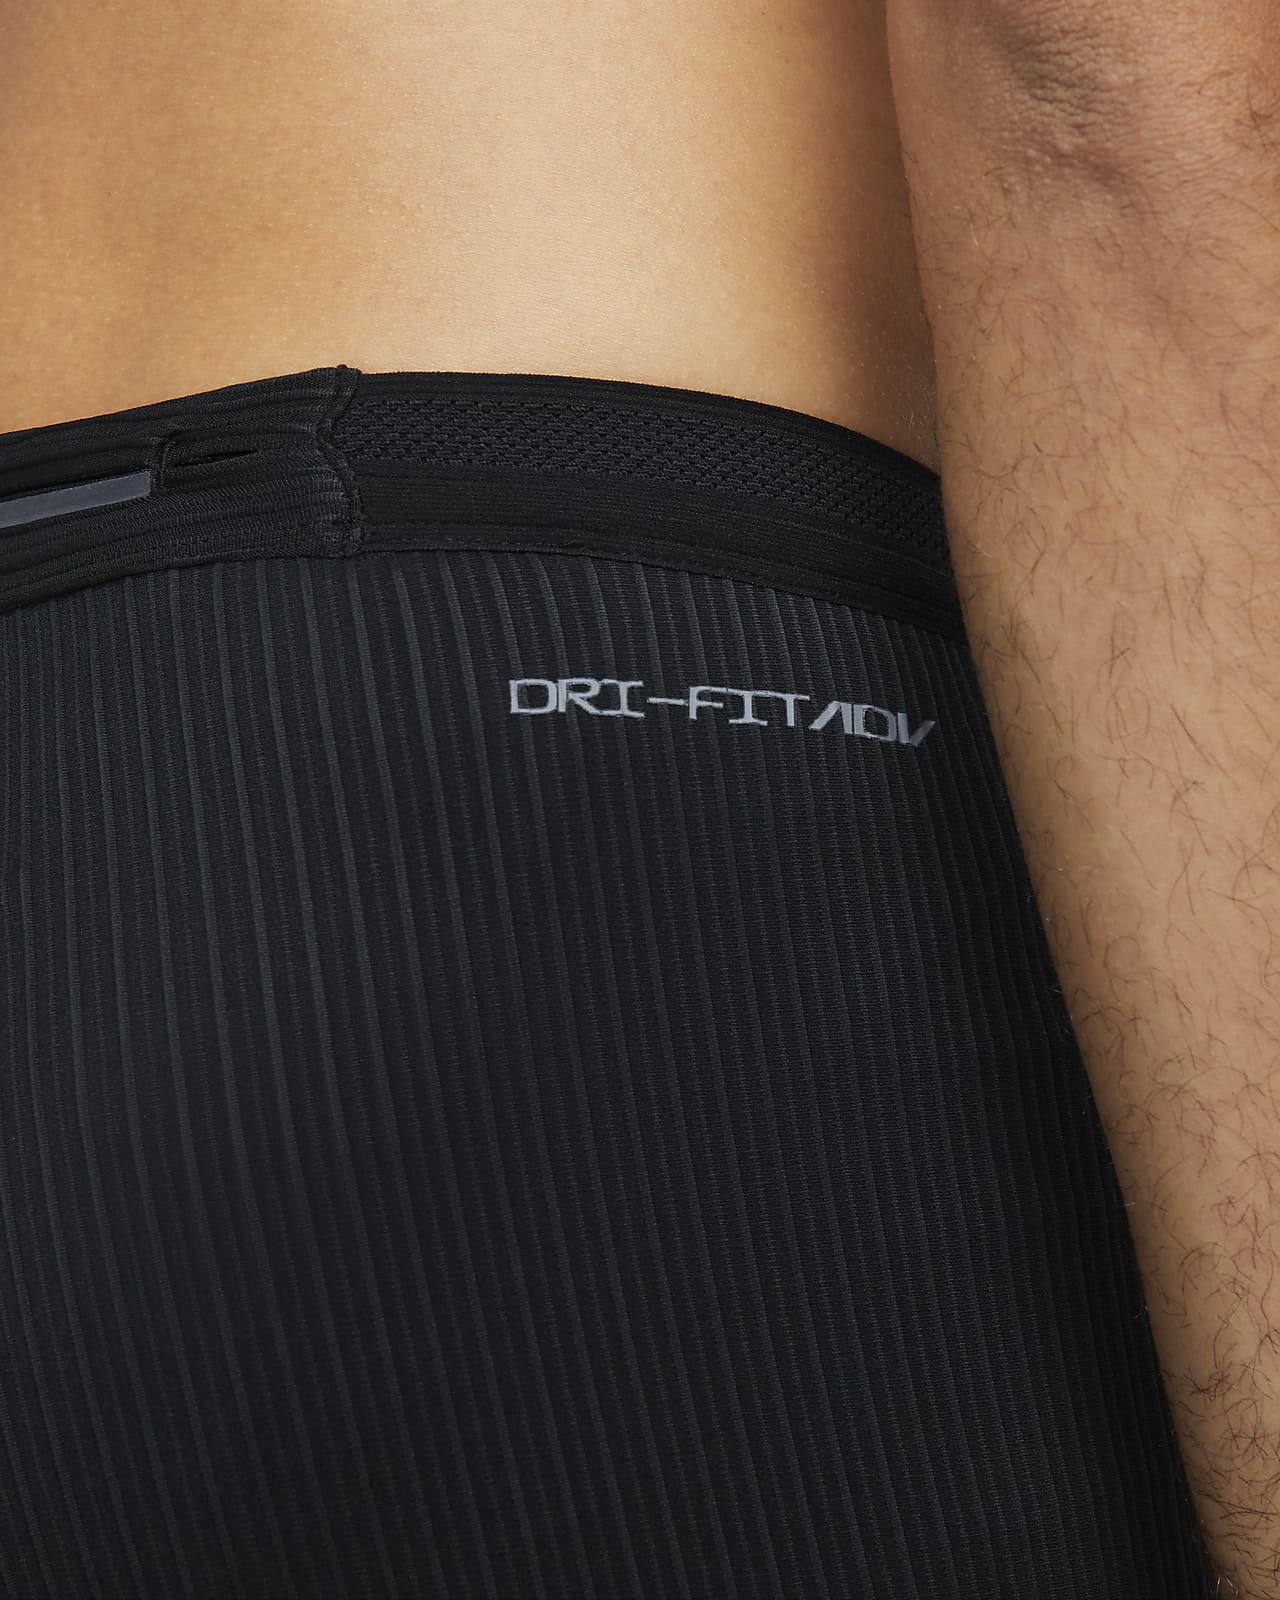 Nike Core Dri-FIT Swift Running Tights Pants Size Medium Black